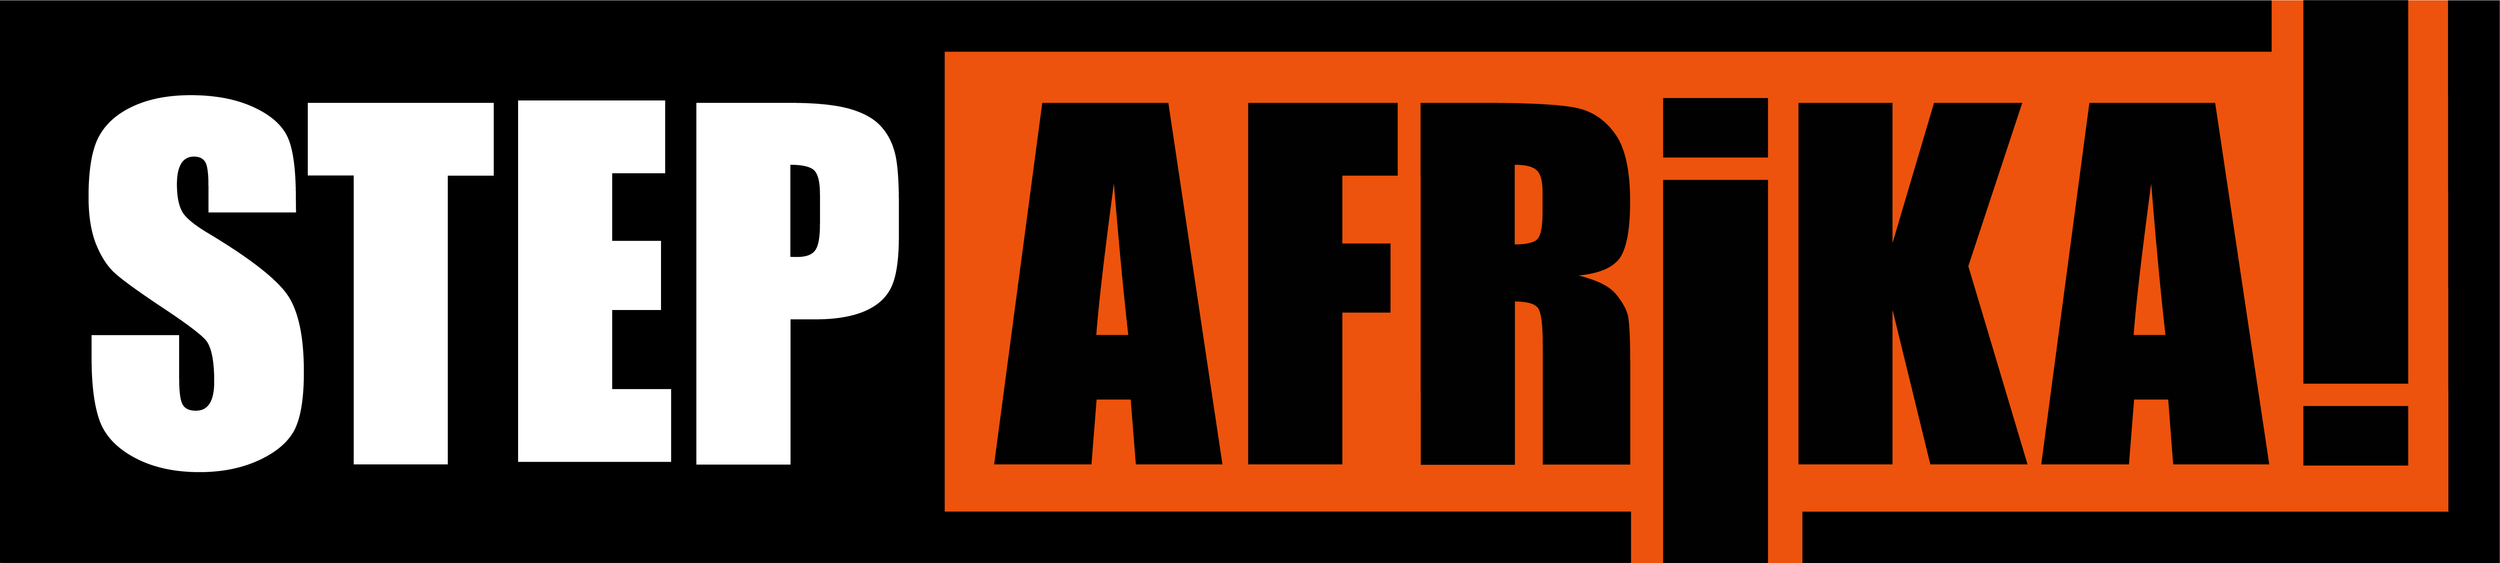 step-afrika-logo-orange.png